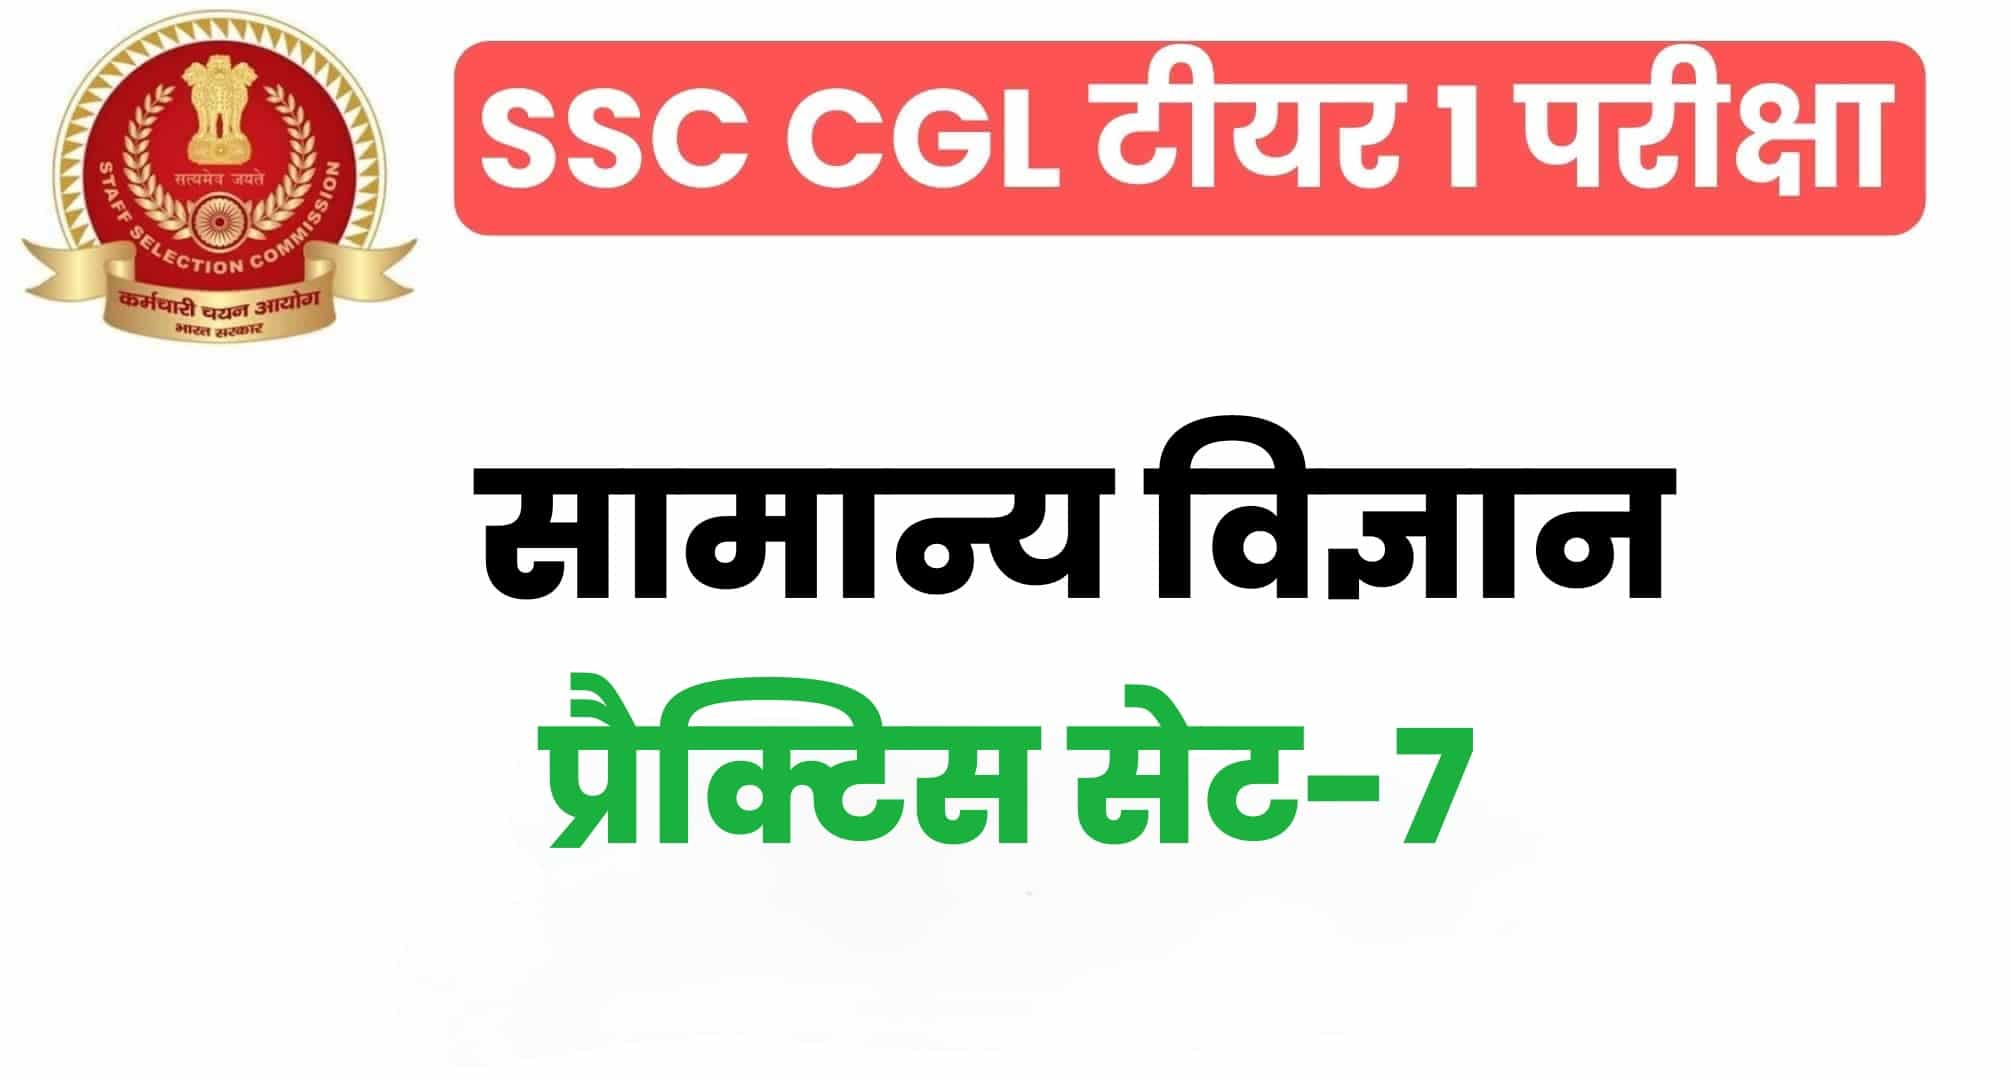 SSC CGL General Science प्रैक्टिस सेट 7 : सामान्य विज्ञान के 25 महत्वपूर्ण प्रश्न, परीक्षा से पहले अवश्य पढ़ लें